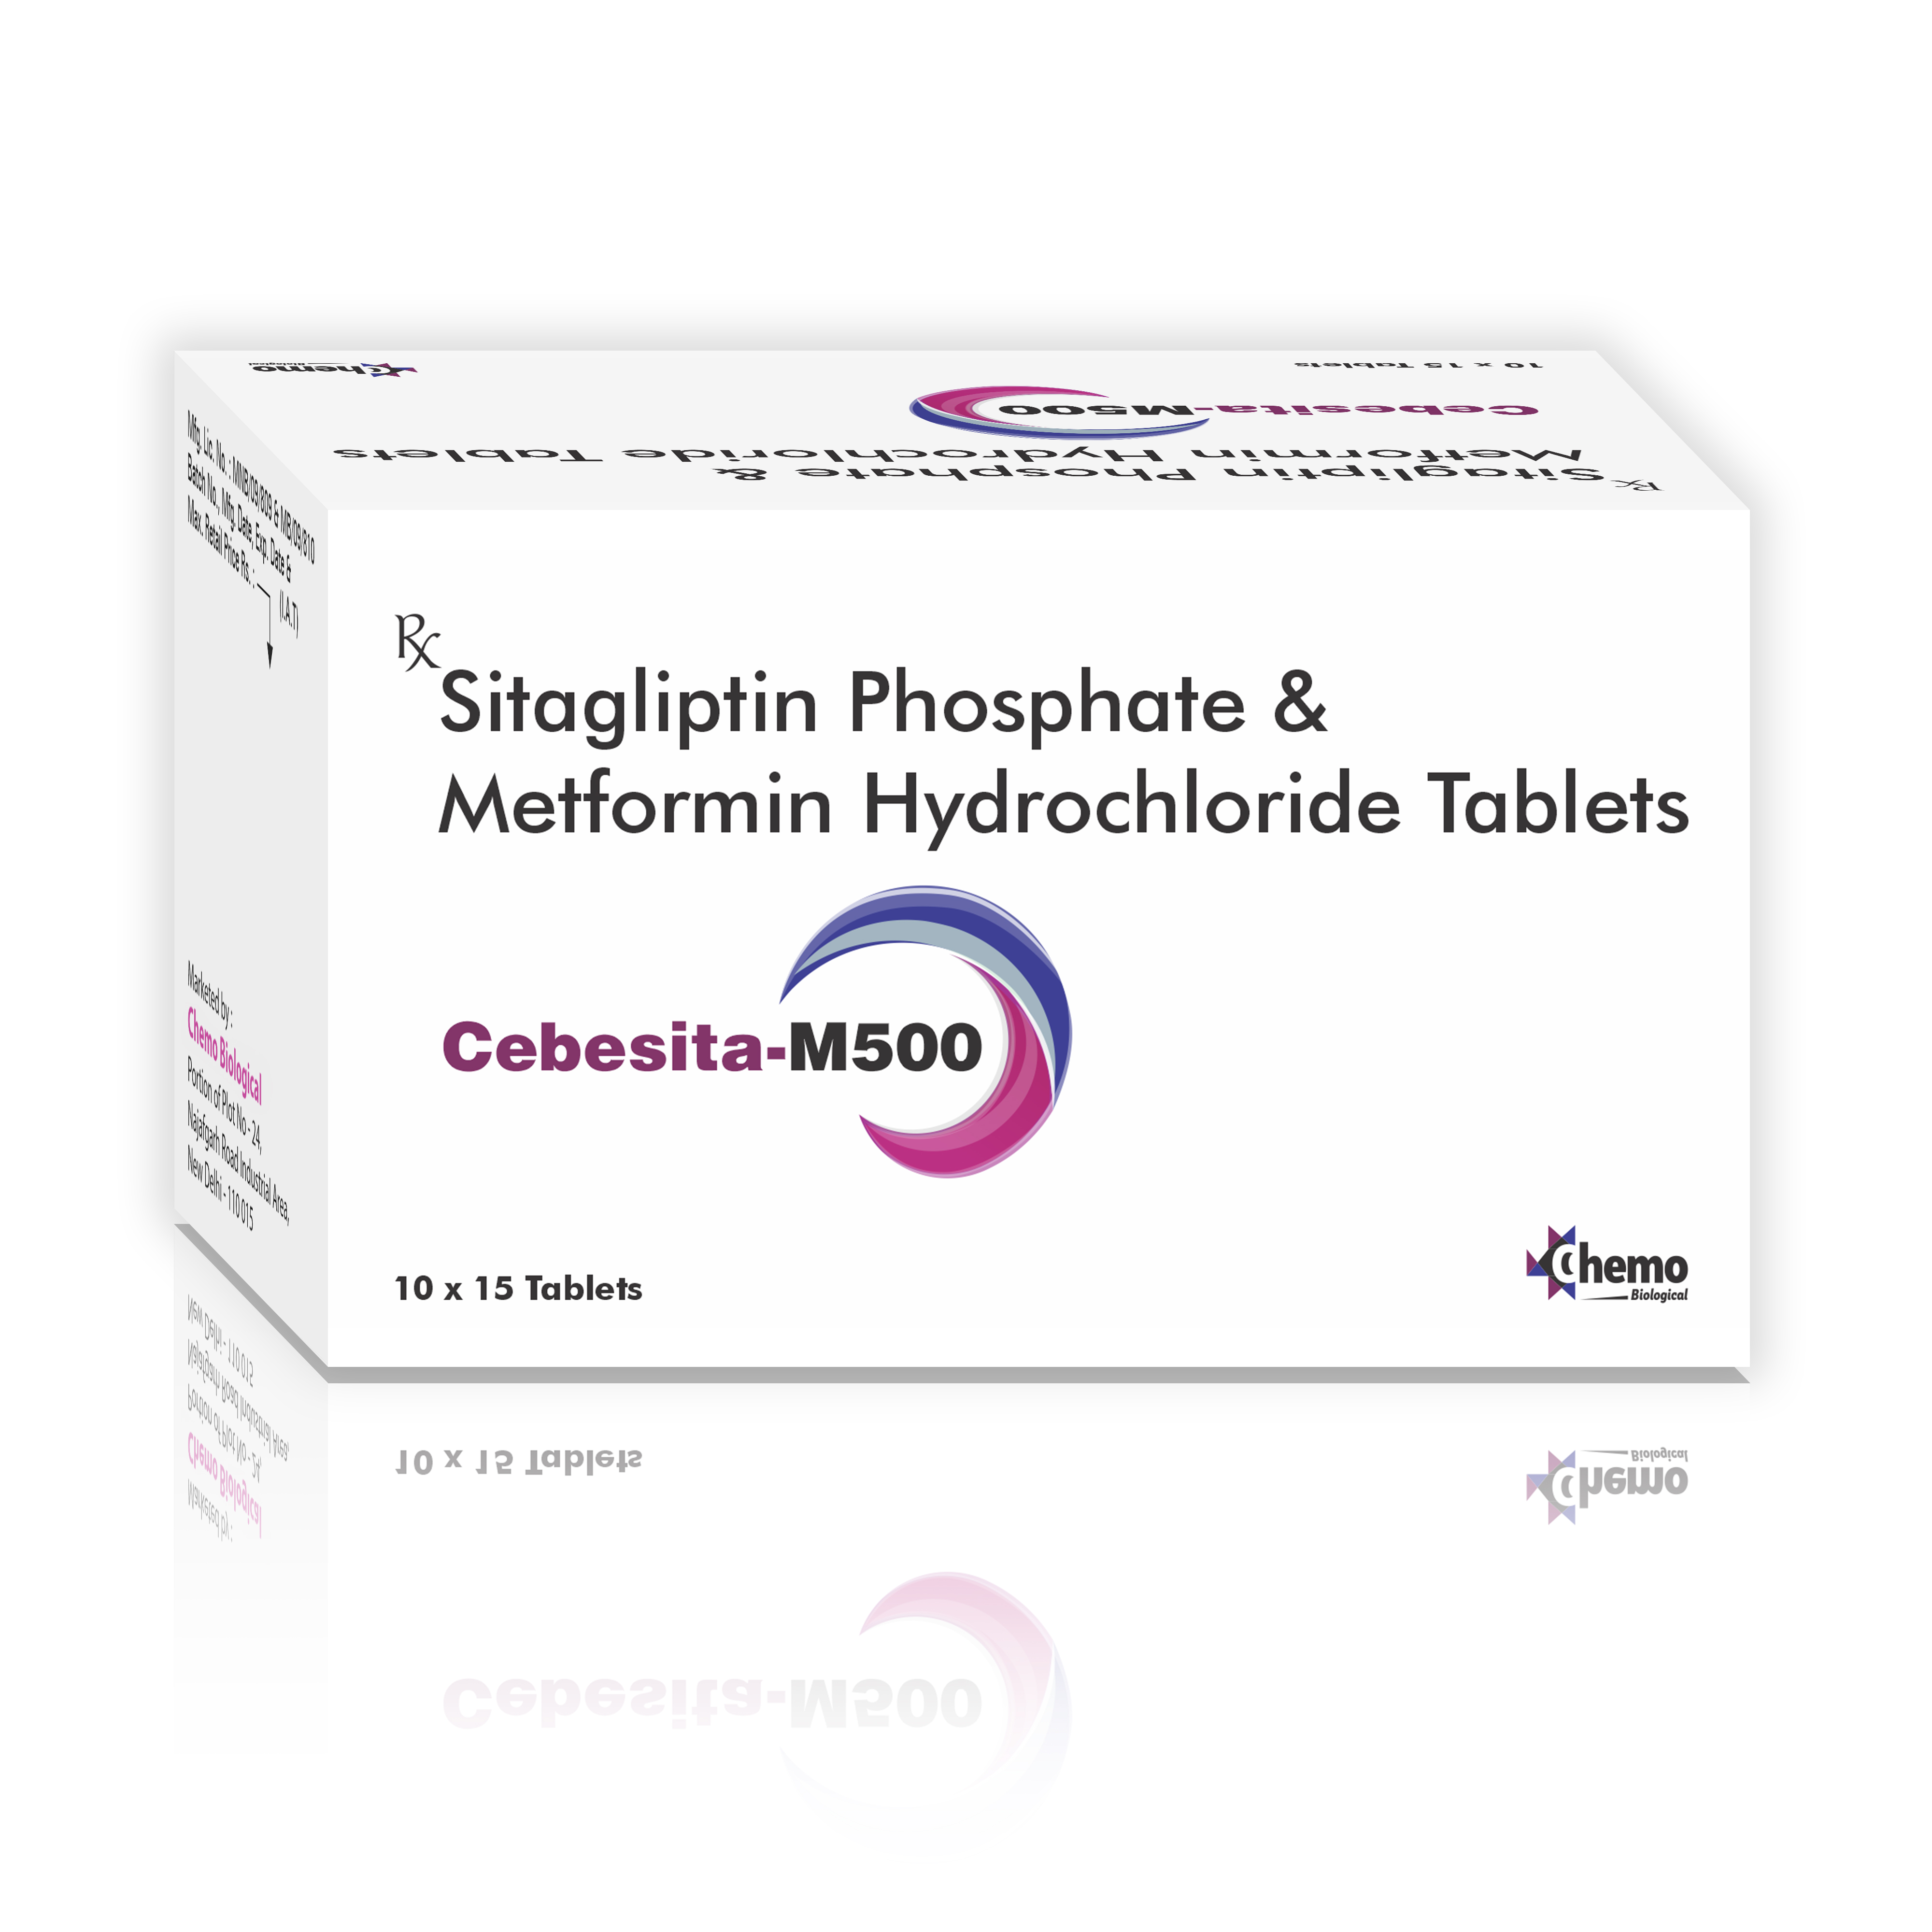 sitagliptin phosphate 50mg + metformin hydrochloride 500mg